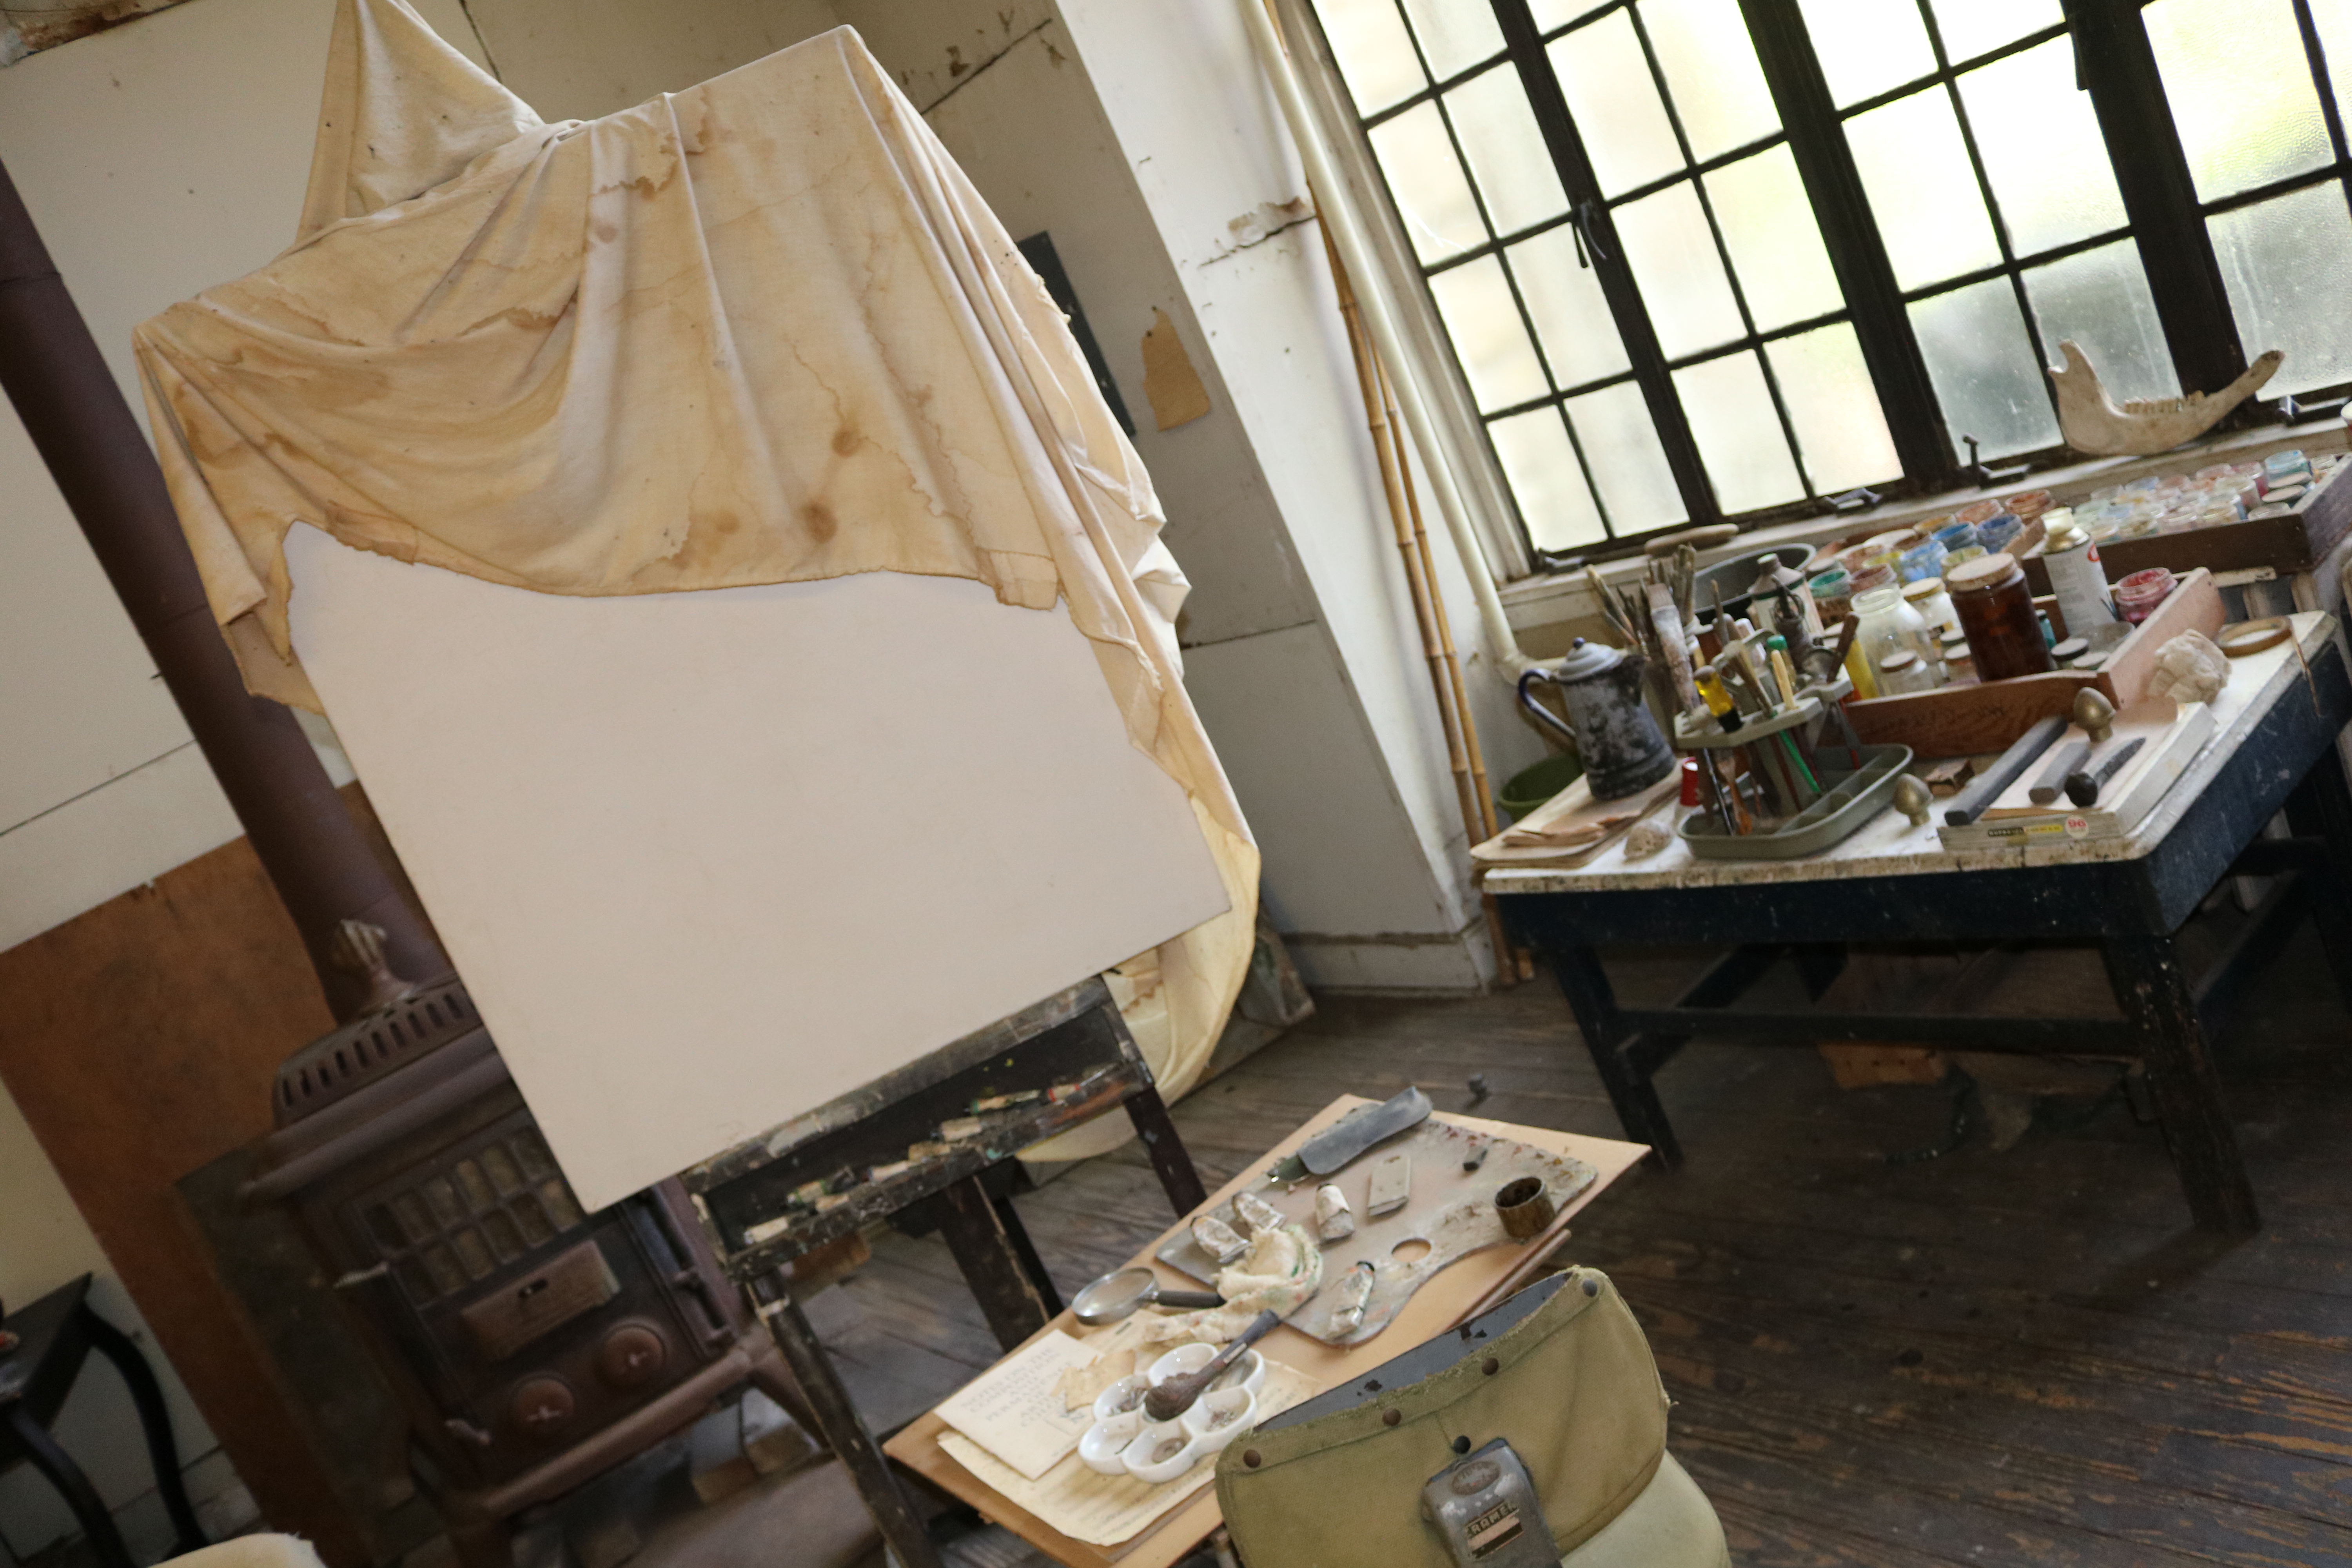 paint canvas and paints inside Benton's studio